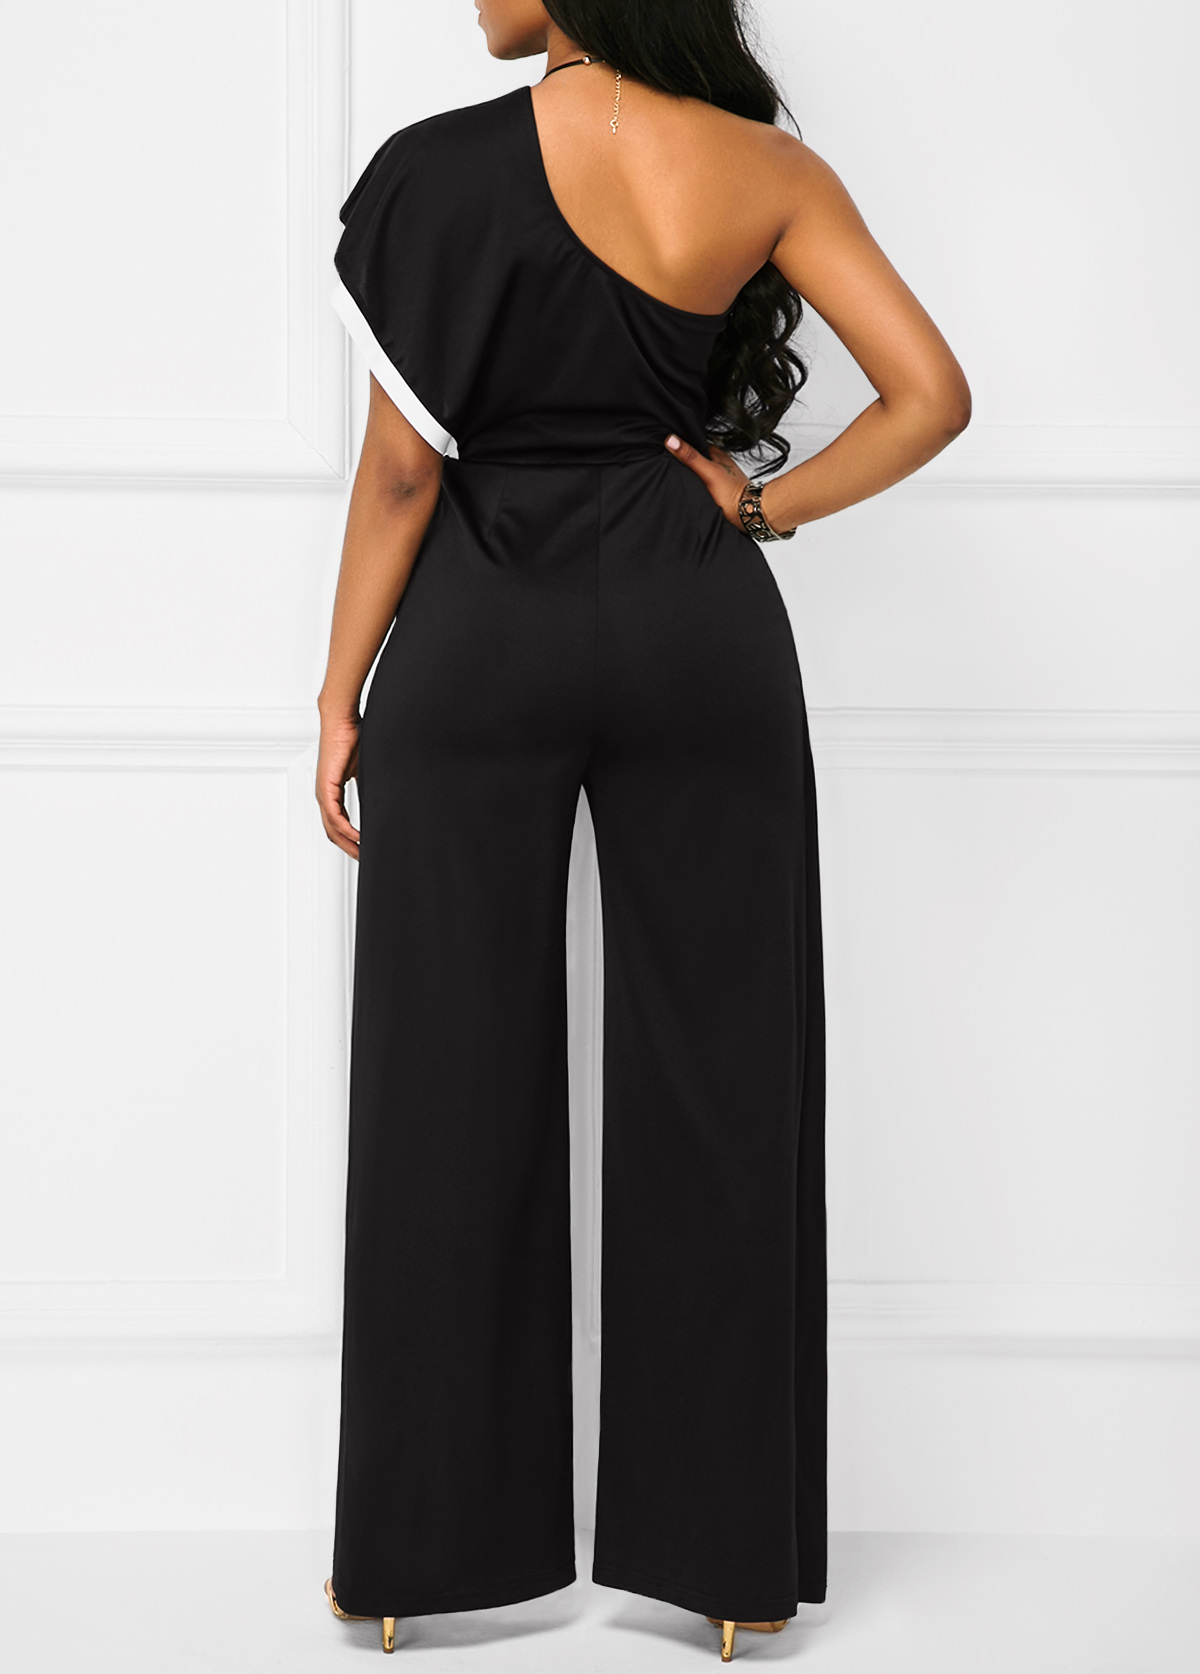 Black Double Slit One Shoulder Jumpsuit - Fashion Design Store